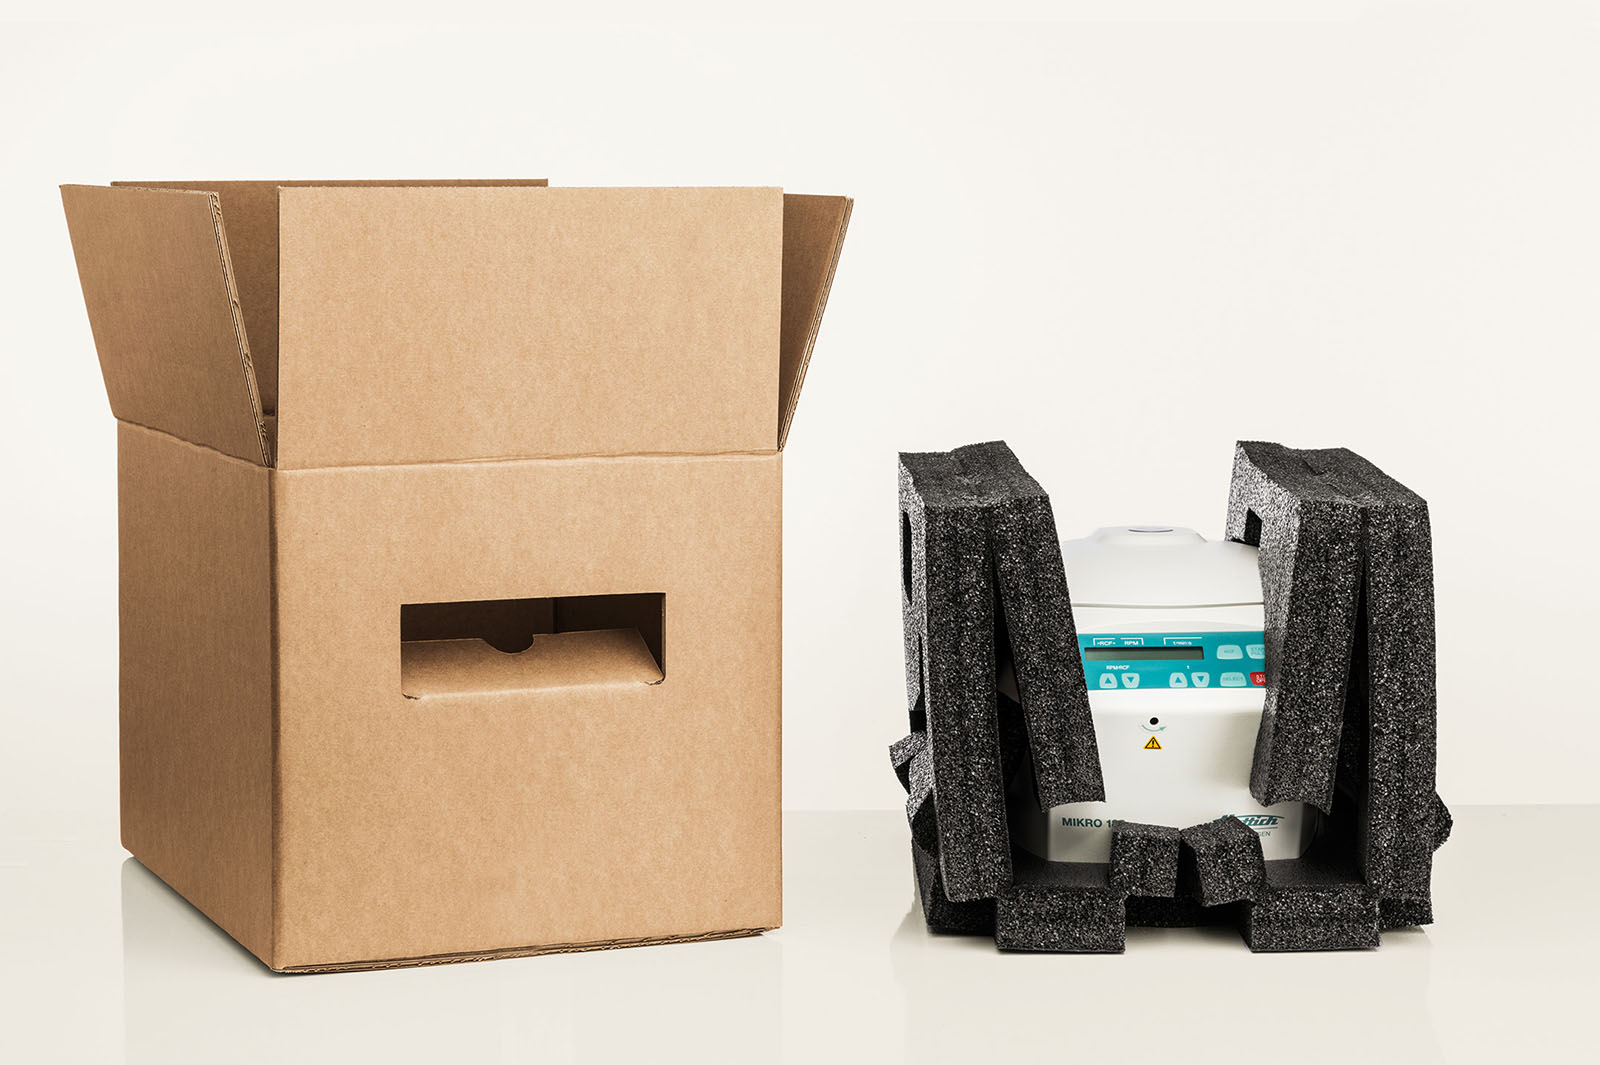 Eine Zentrifuge ist in einem faltbaren Polster aus schwarzem Recyclingschaum eingepackt. Der passende Karton steht bereit.